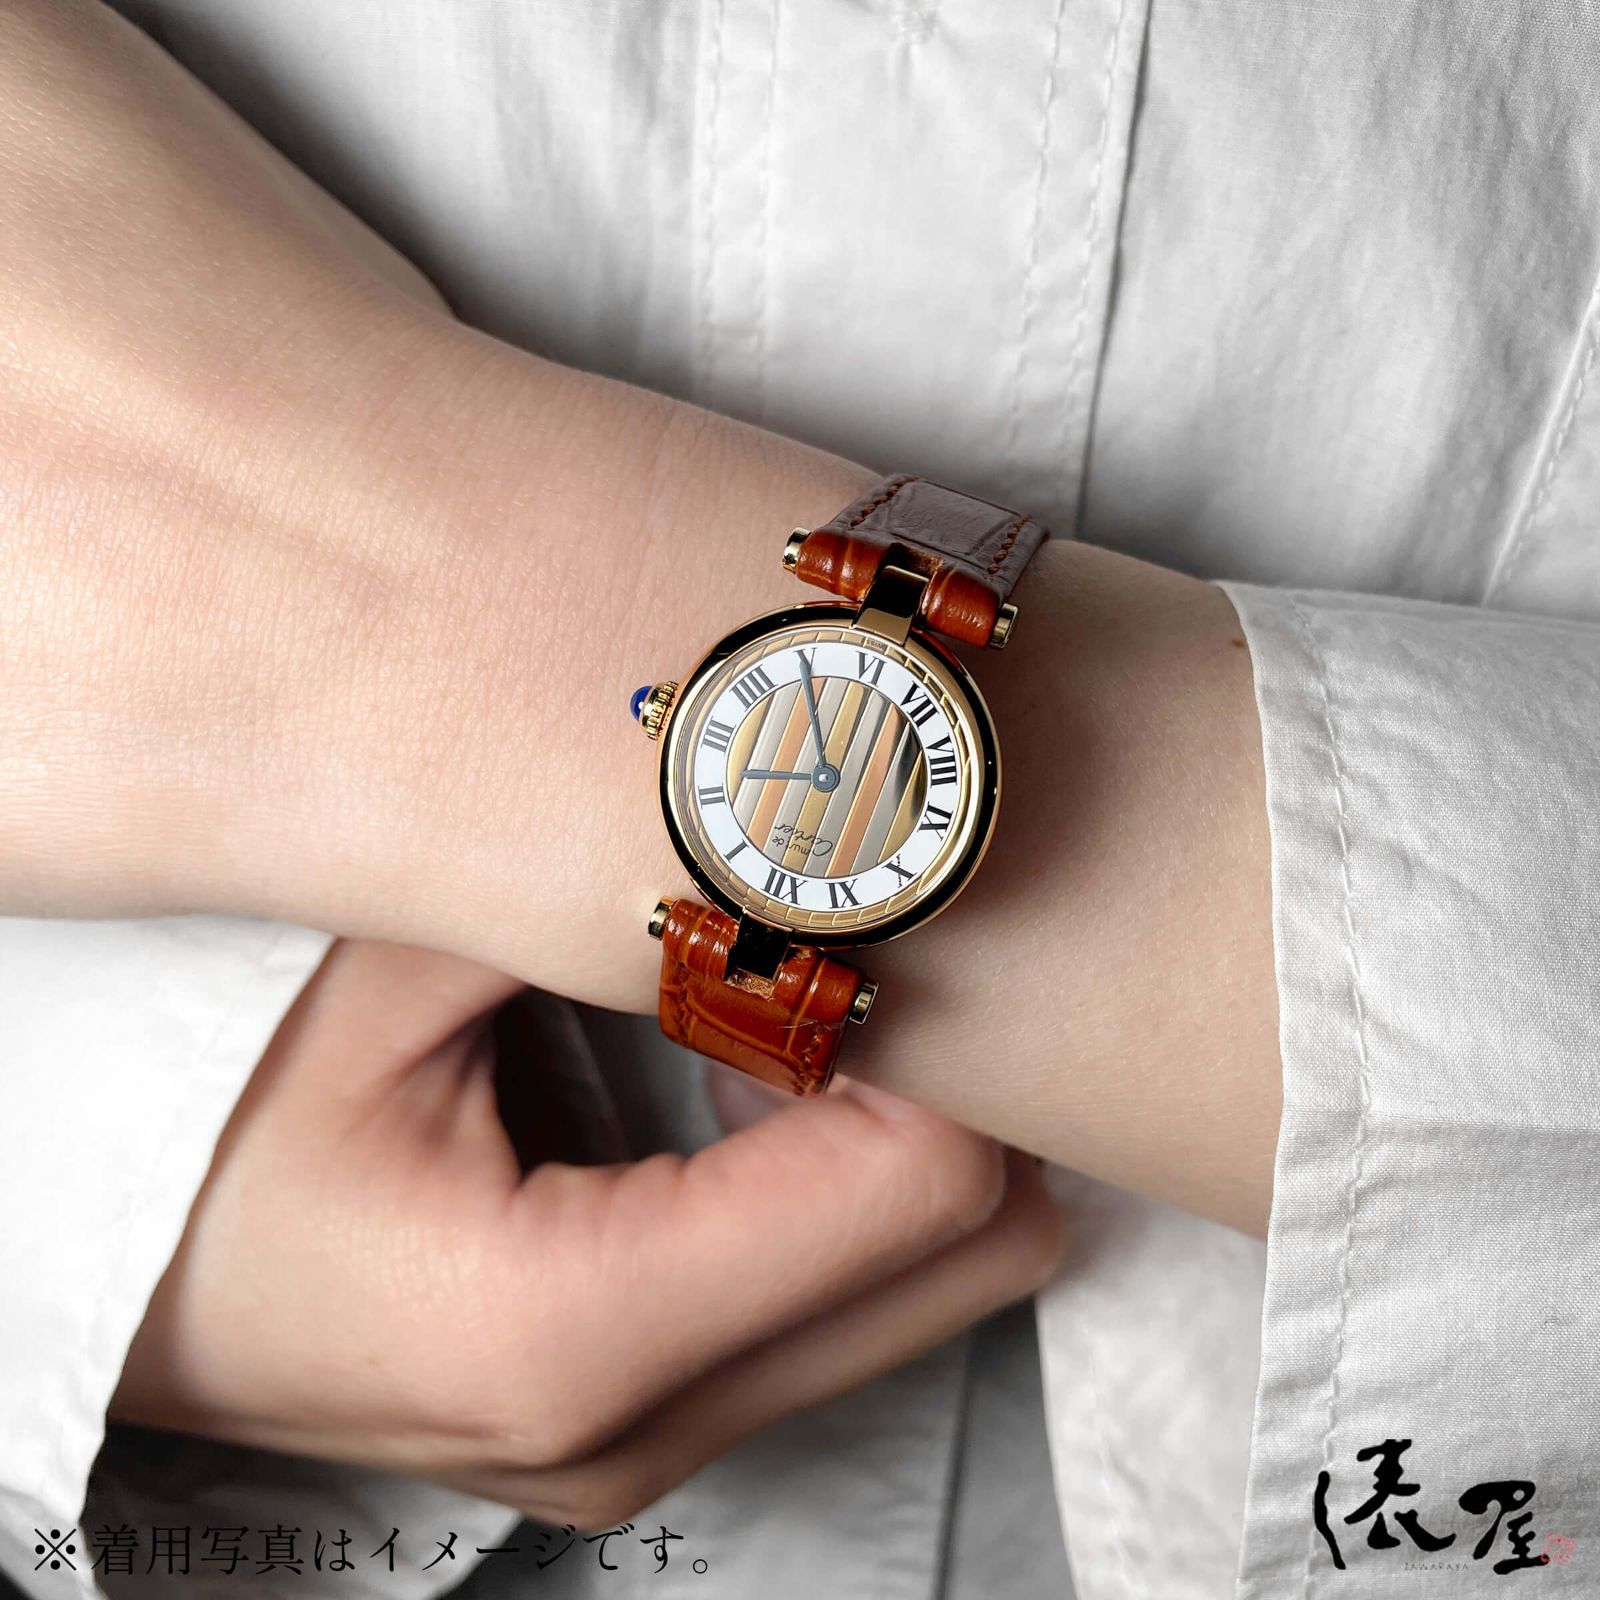 【OH済/仕上済】カルティエ マストヴァンドーム SM 美品 レディース ヴィンテージ Cartier 時計 腕時計 中古【送料無料】